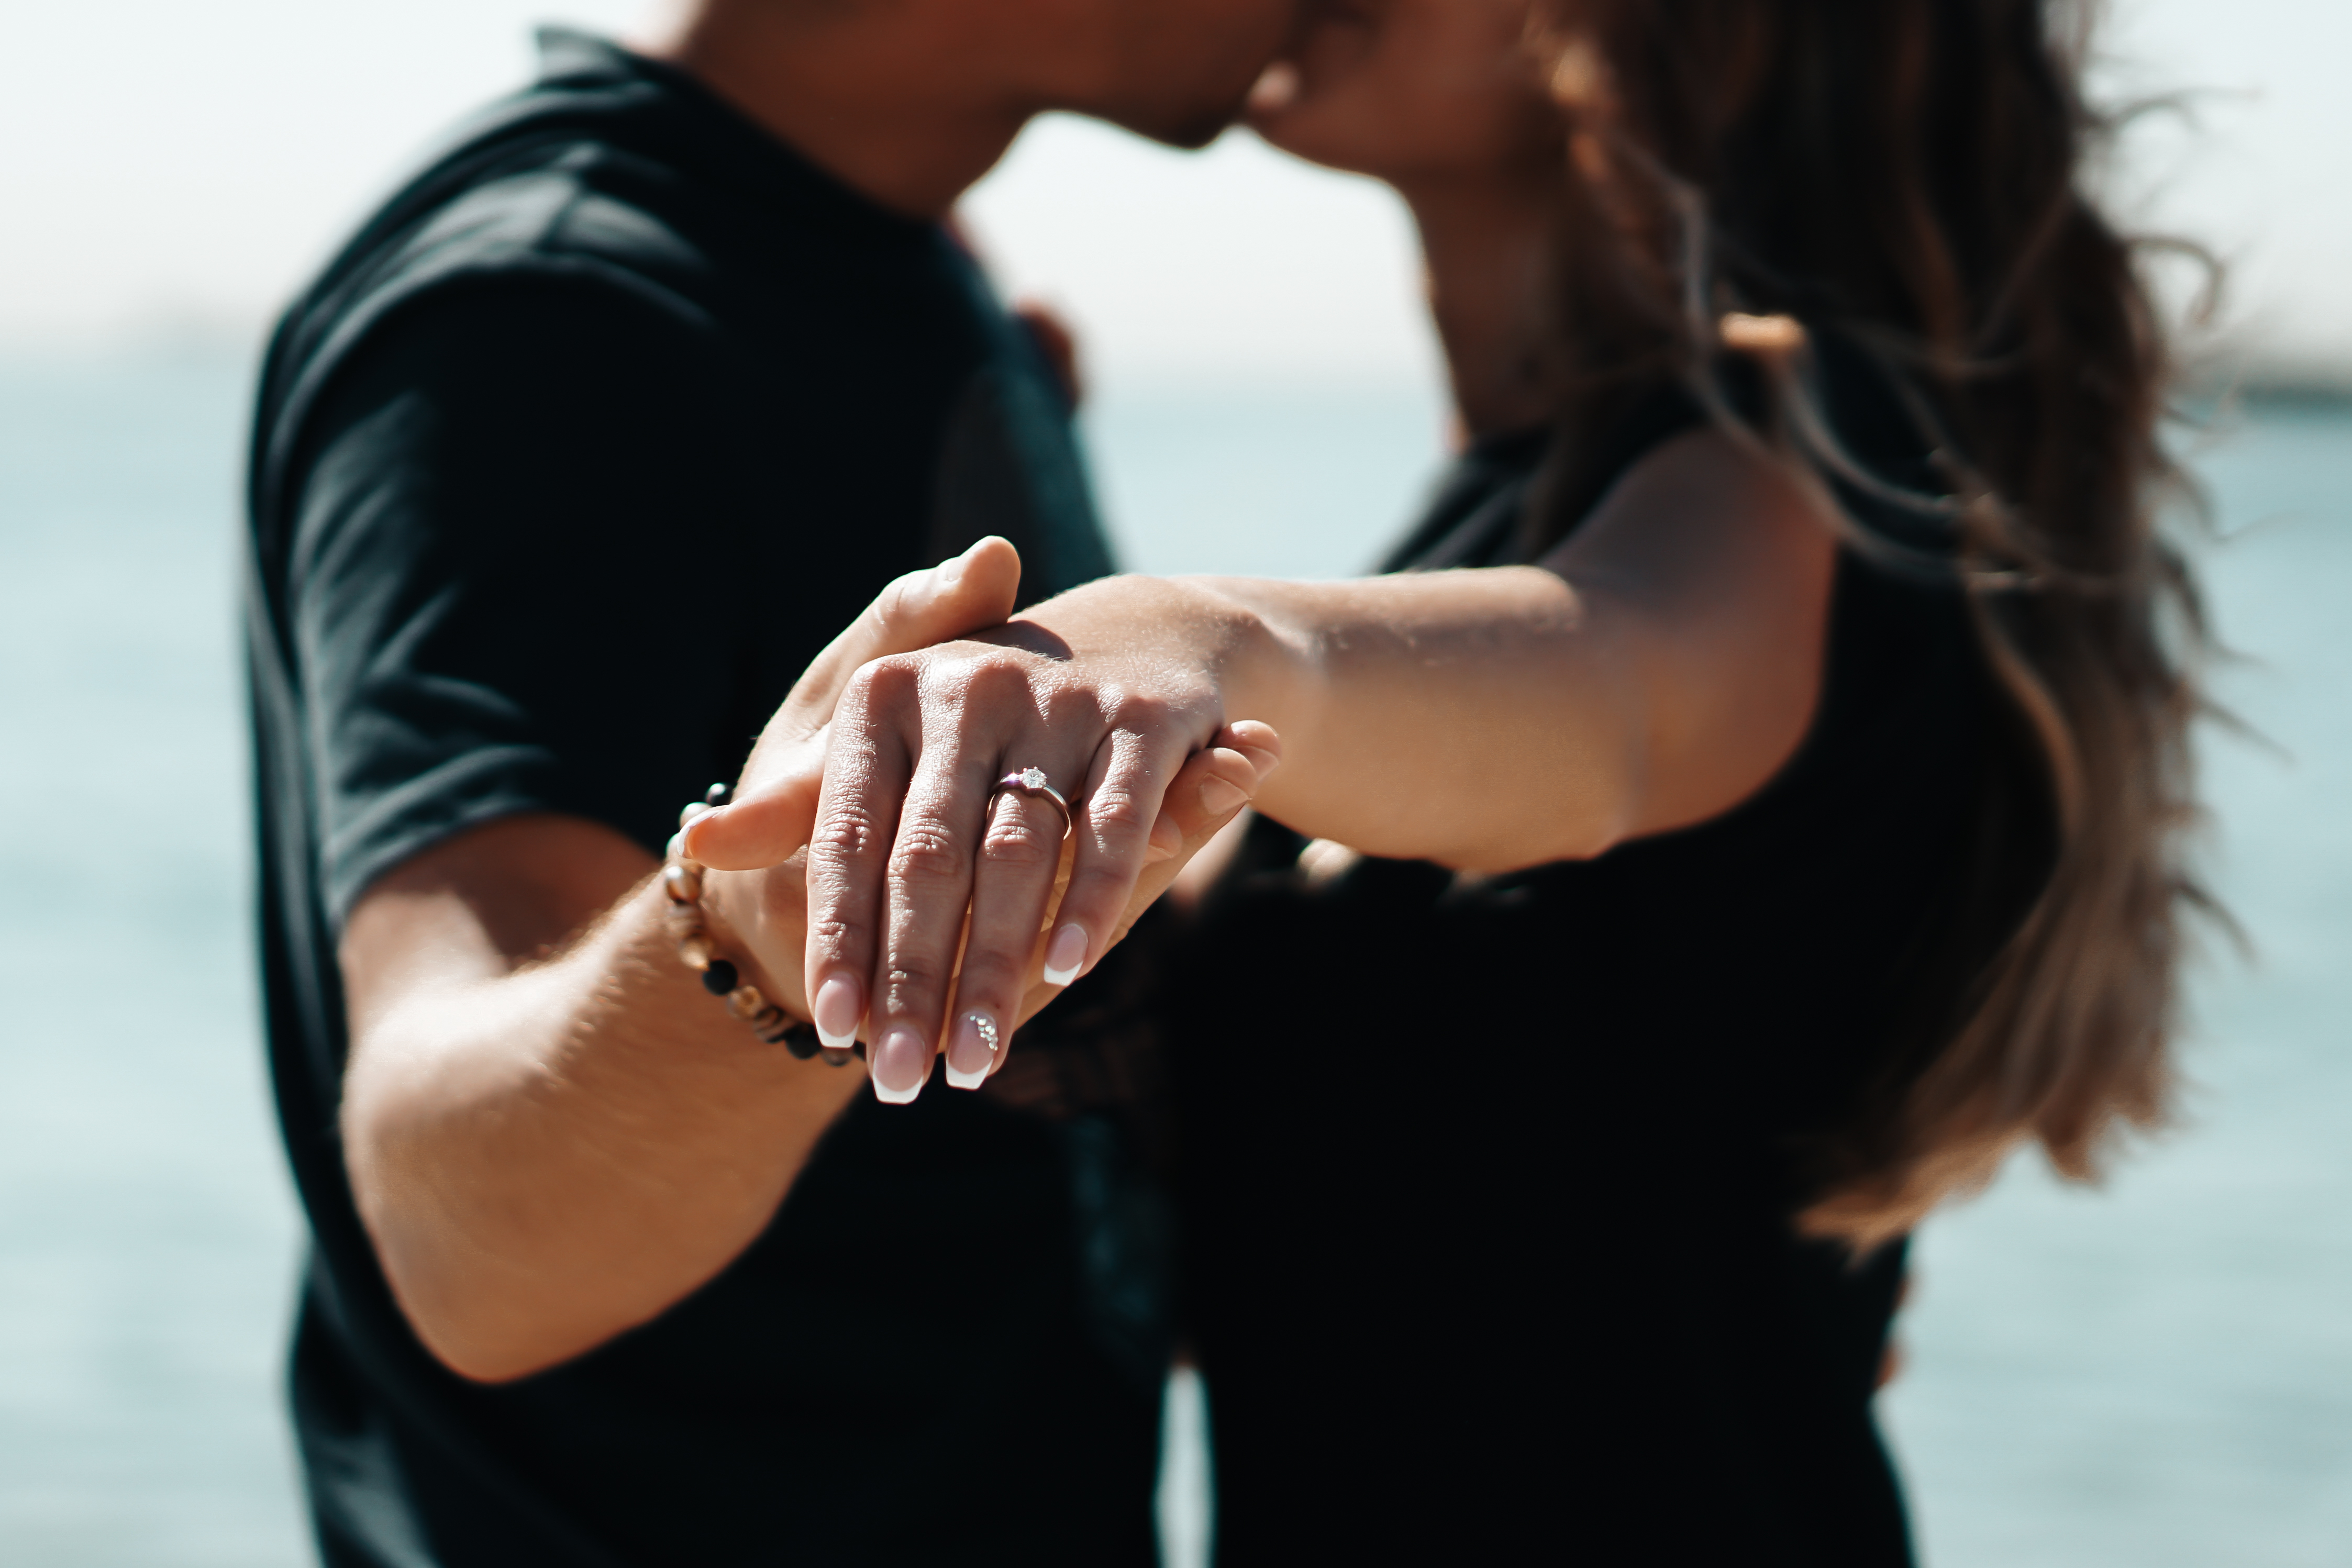 Des fiancés s'embrassent et tendent leurs mains vers l'appareil photo | Source : Shutterstock